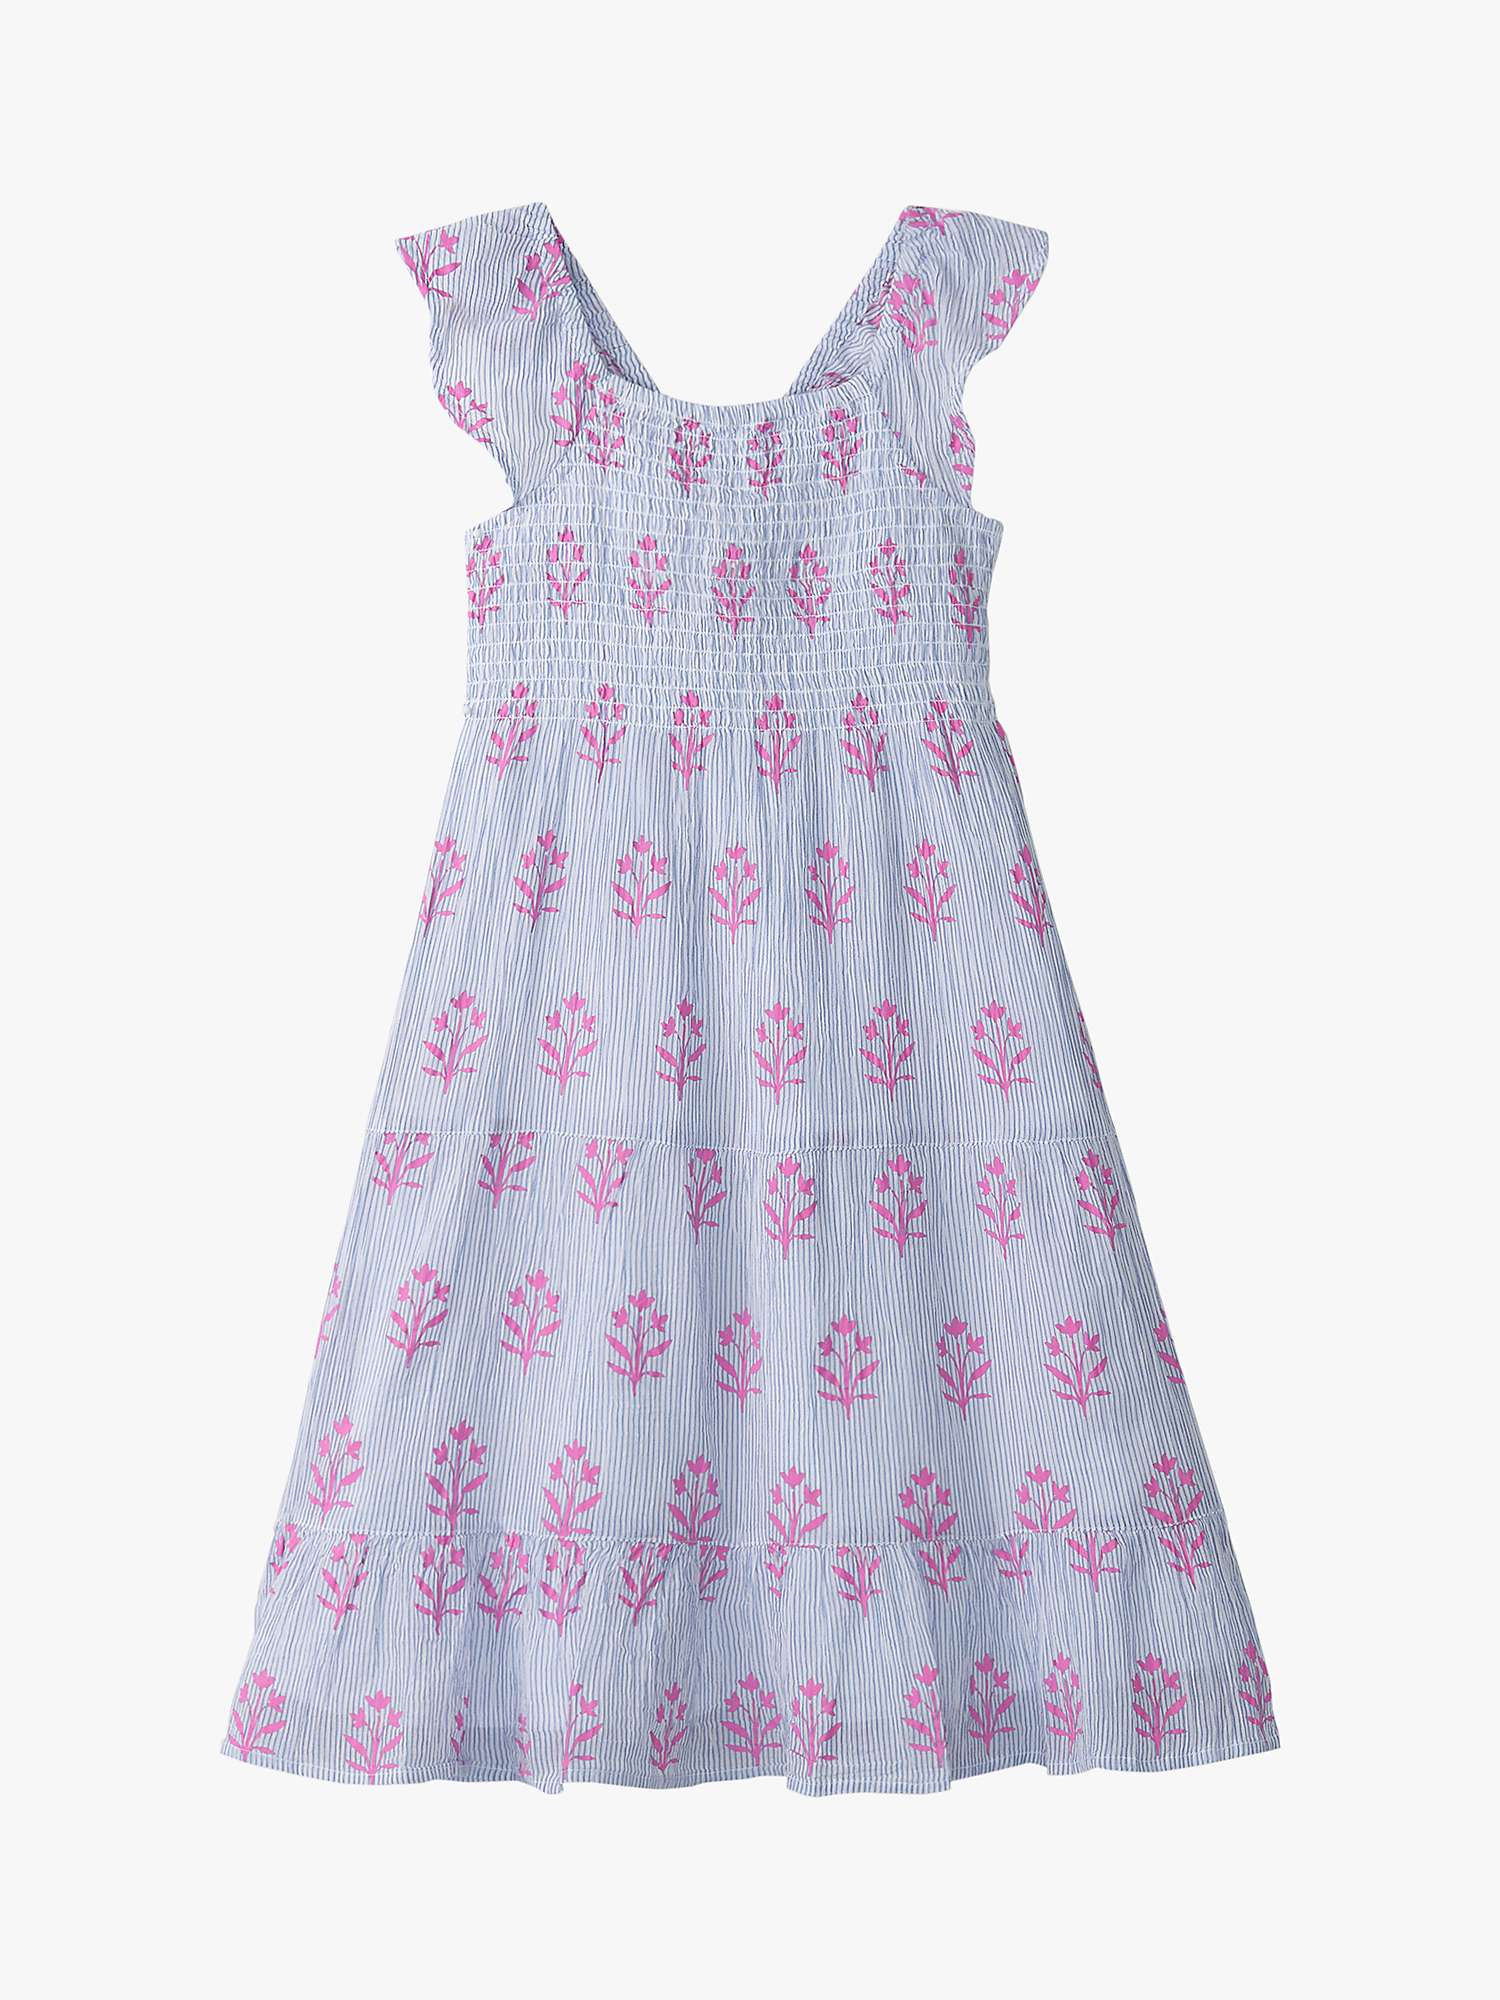 Buy Hatley Kids' Wildflower Print Smocked Seersucker Dress, White/Multi Online at johnlewis.com